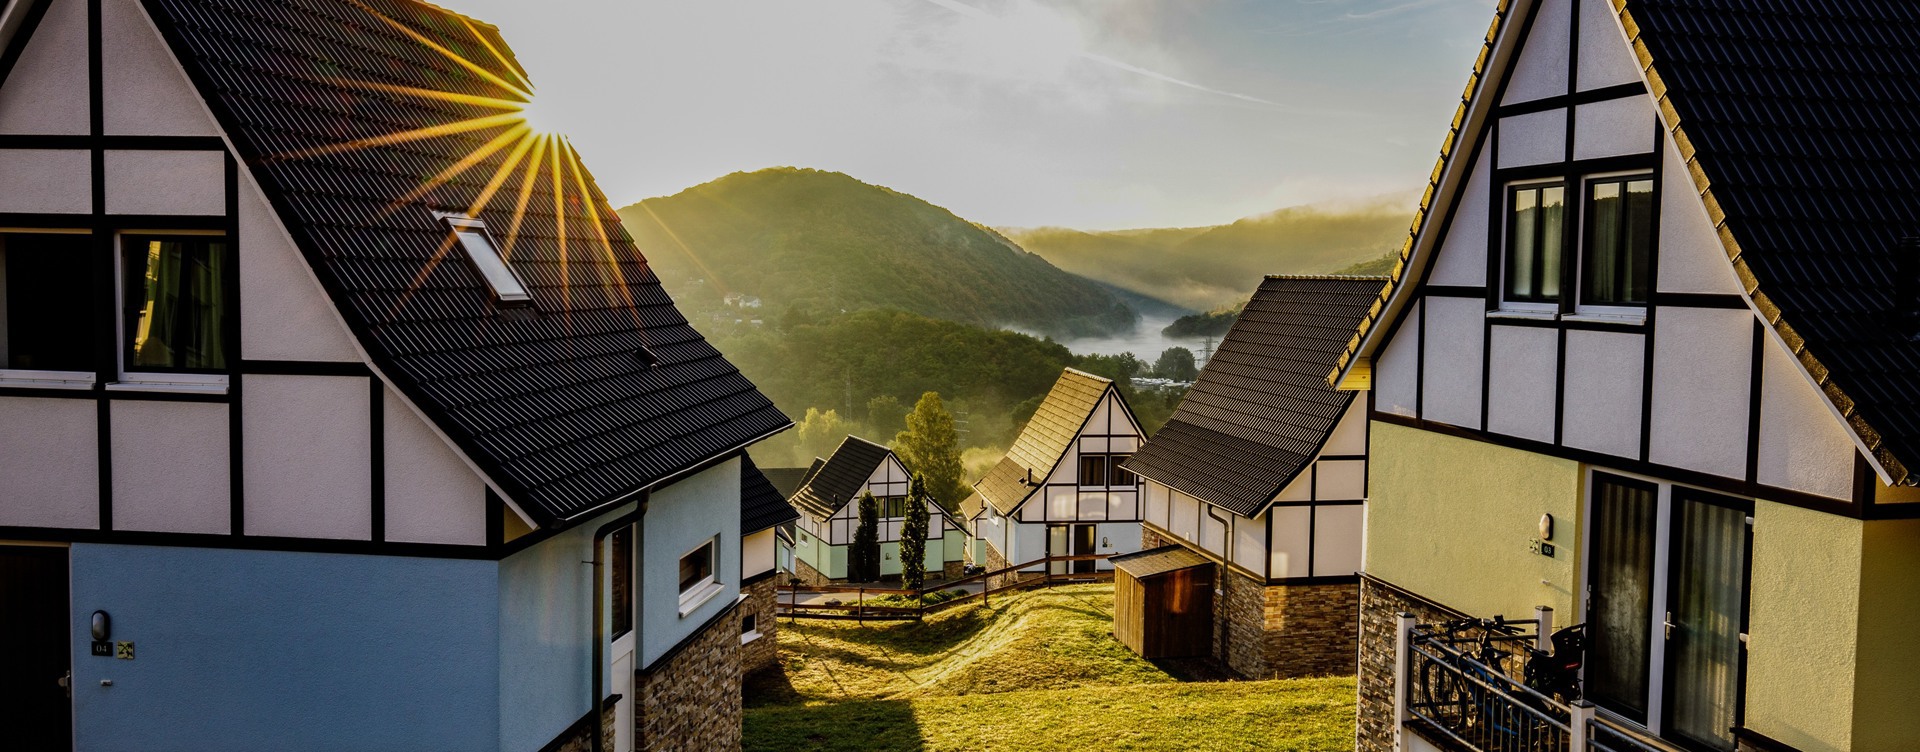 Entspannen Sie sich in Ihrem eigenen Ferienhaus
in unmittelbarer Nähe des Nationalparks Eifel